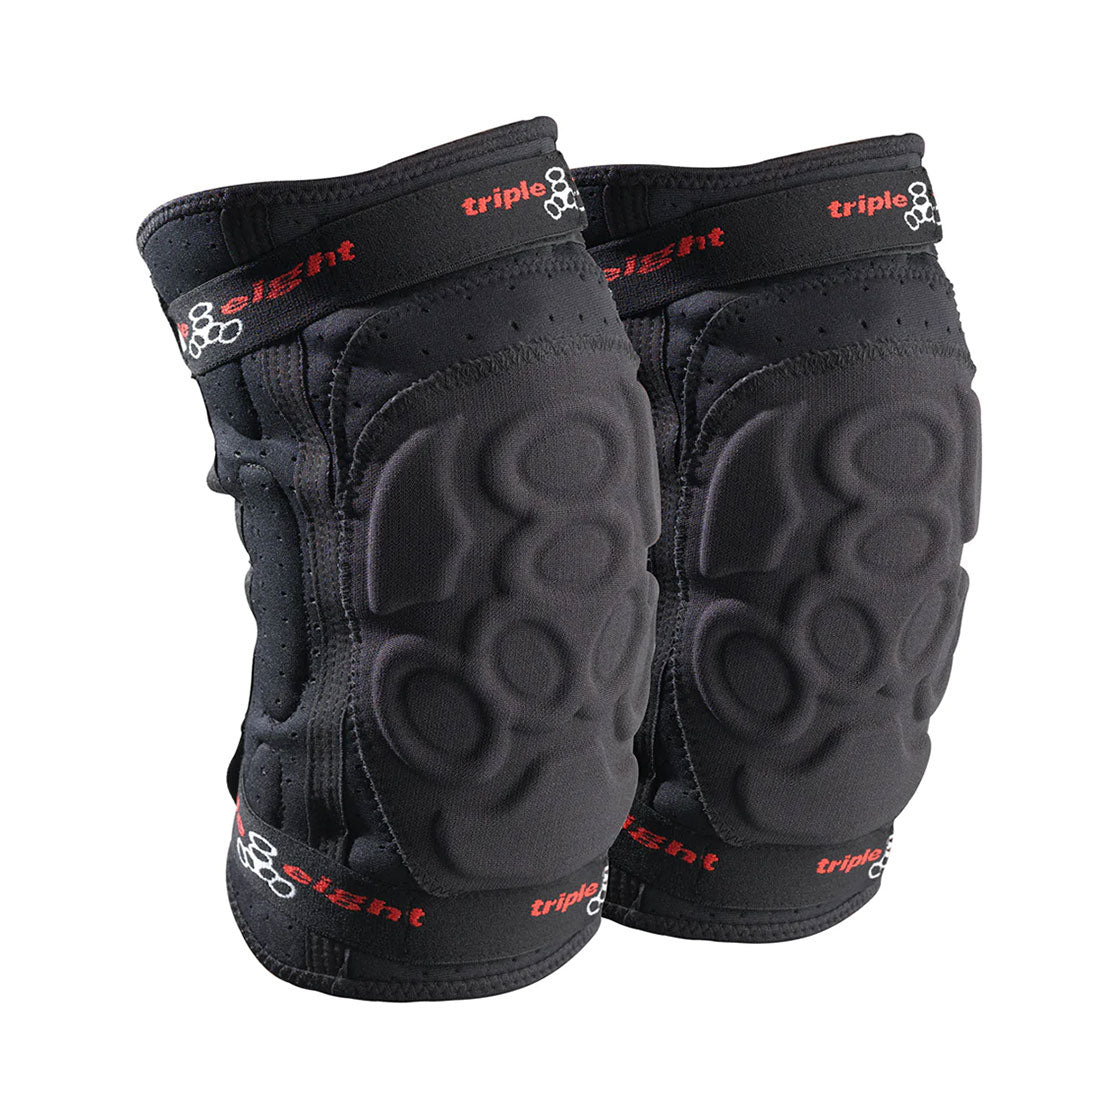 Triple 8 Exoskin Knee Protective Gear